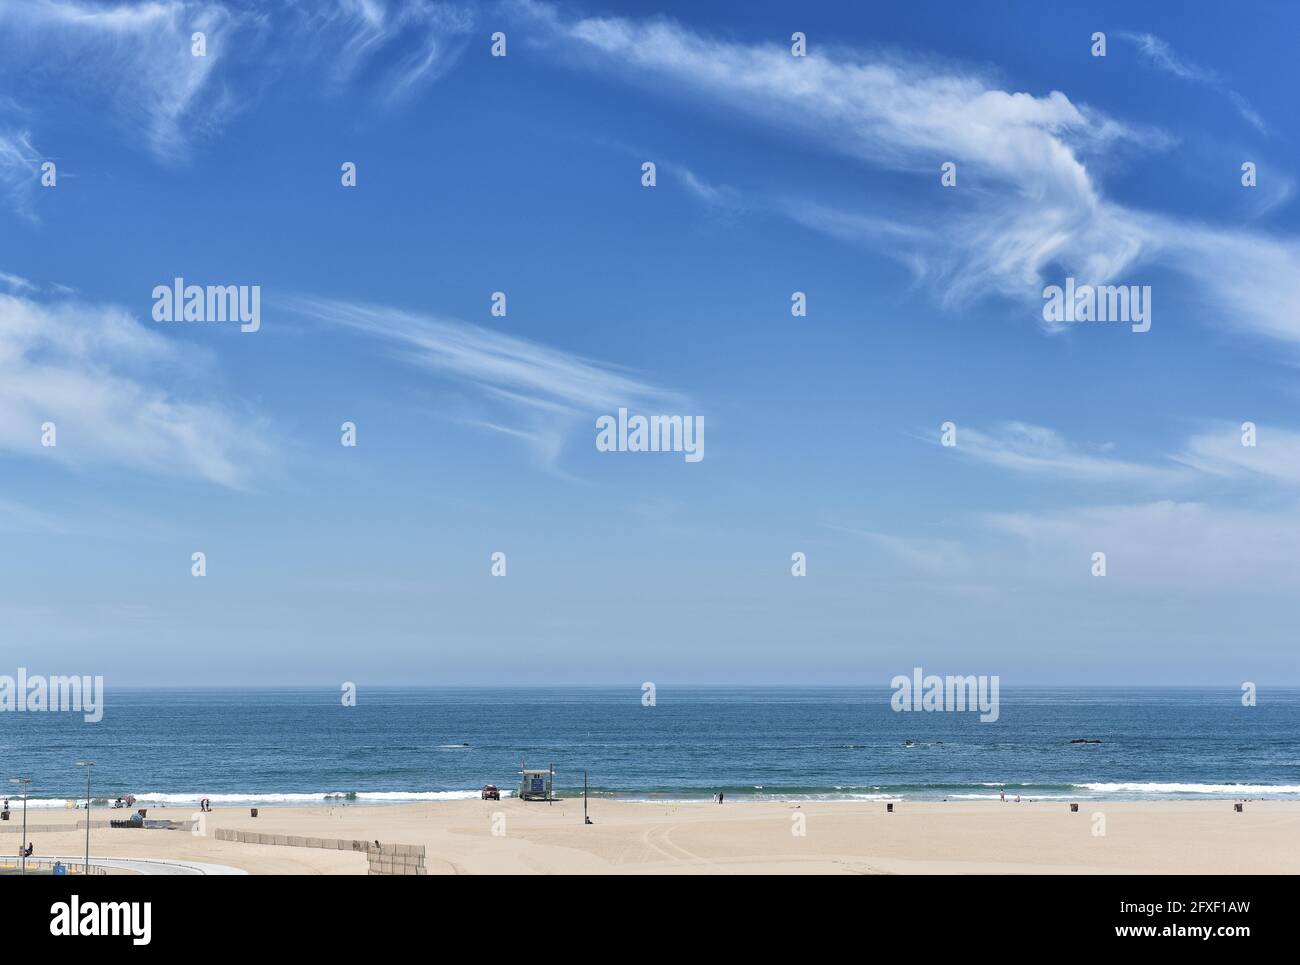 SANTA MONICA, CALIFORNIE - 25 MAI 2021: Plage à la baie de Santa Monica en regardant vers l'horizon le ciel bleu nuageux. Banque D'Images